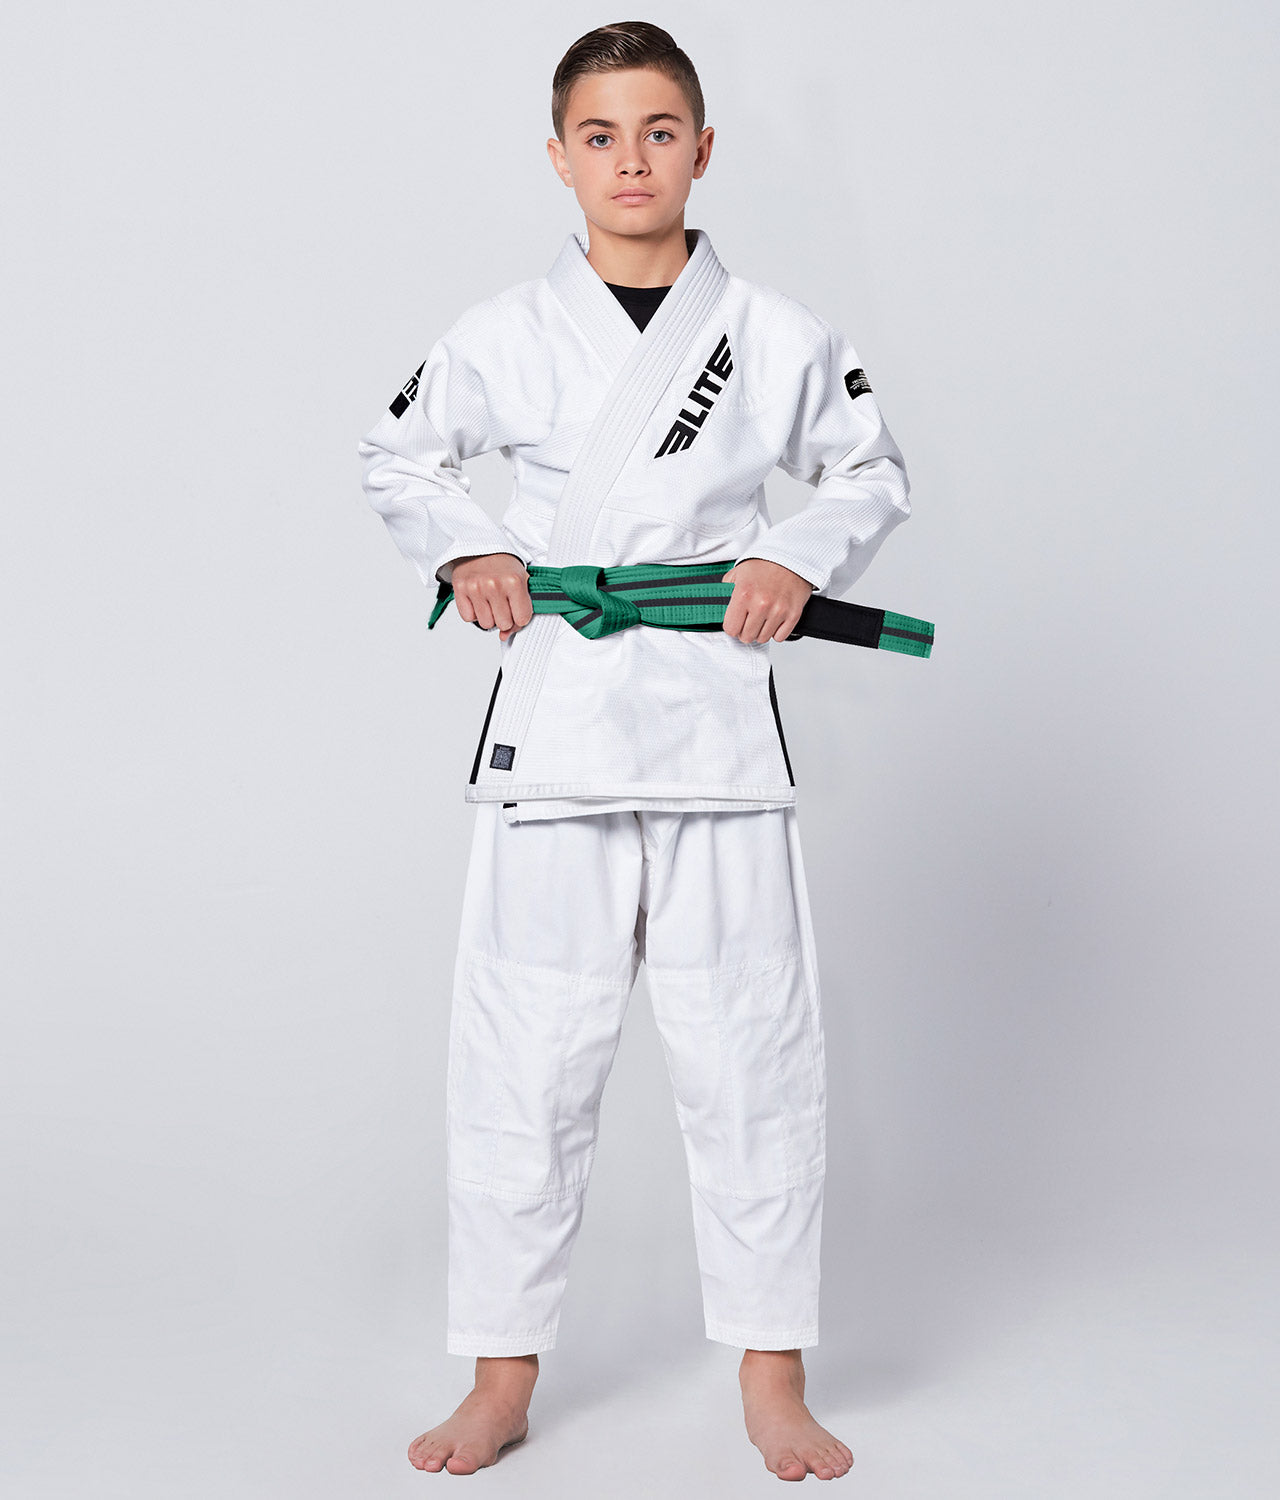 Kids' Jiu Jitsu BJJ Green/Black Belt